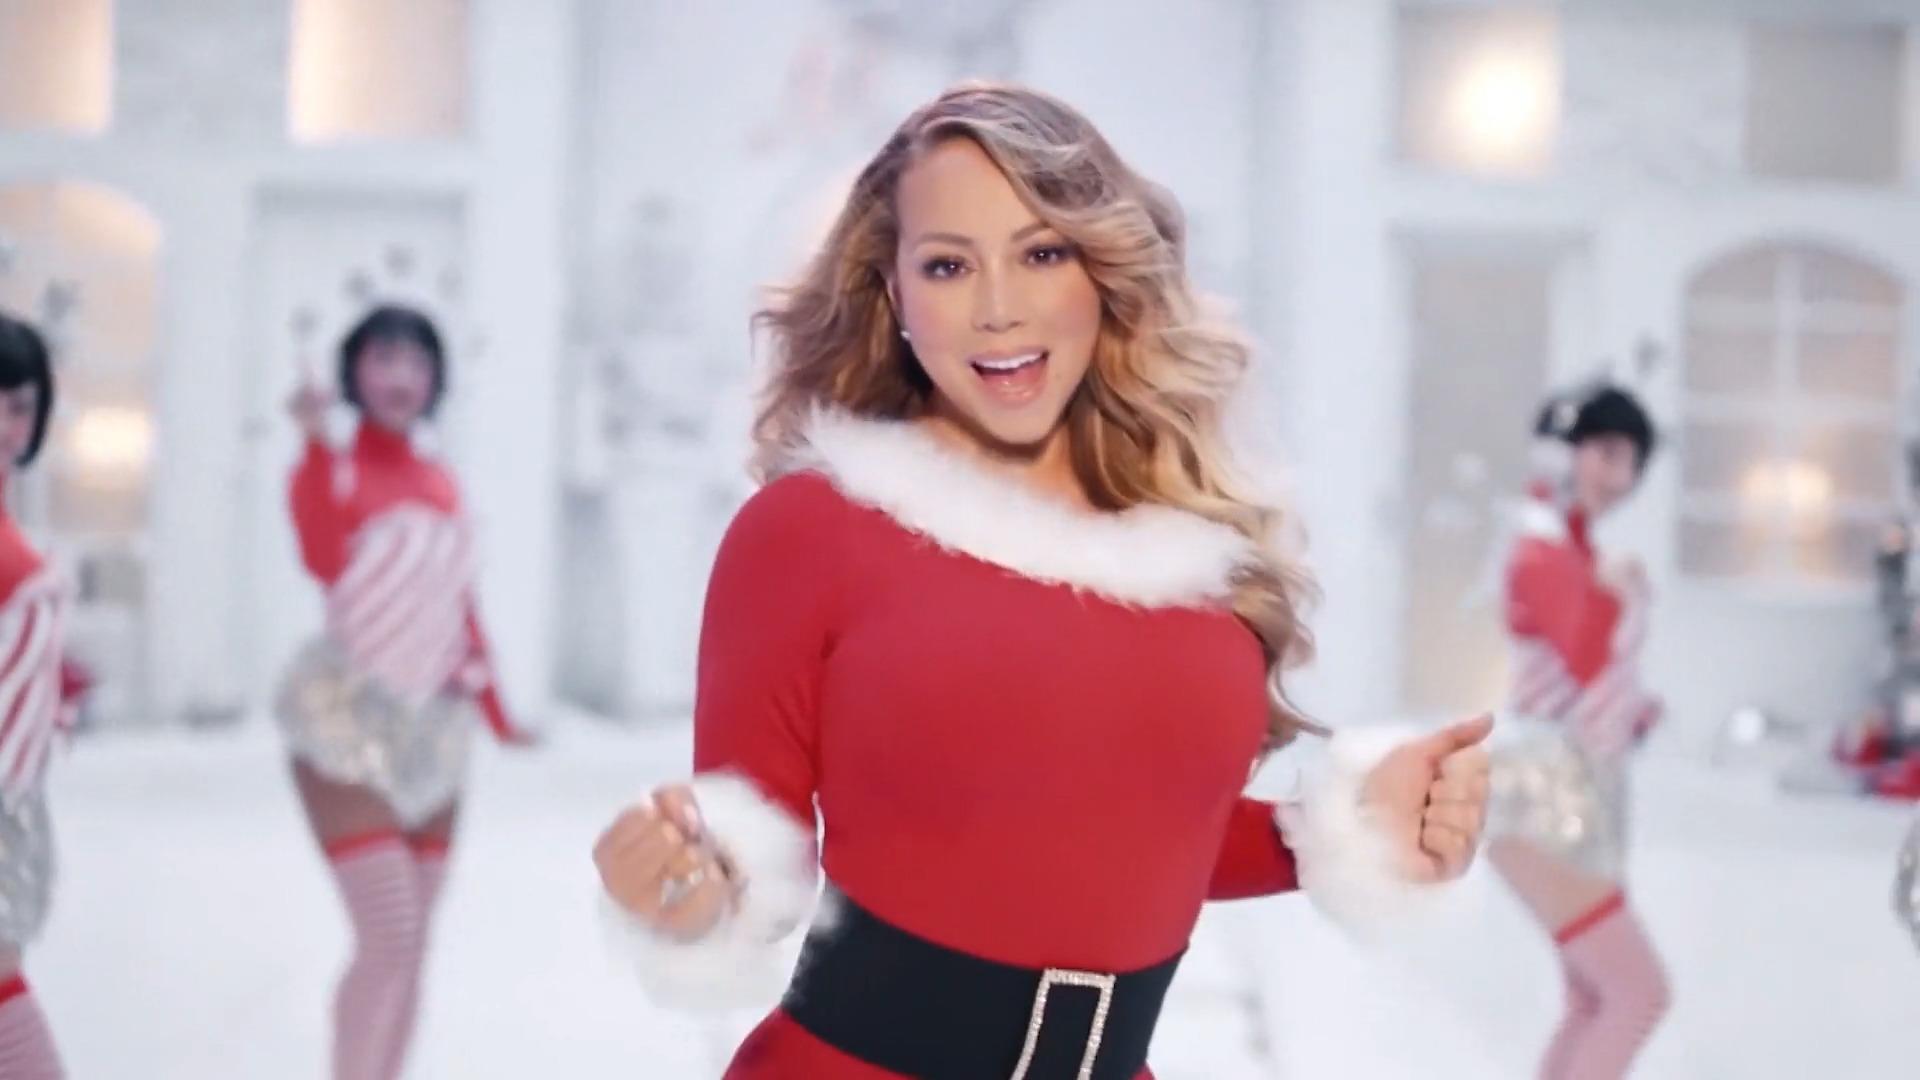 Bei Mariah Carey klingelt wieder die Weihnachts-Kasse Großer Billboard-Erfolg schon Ende November